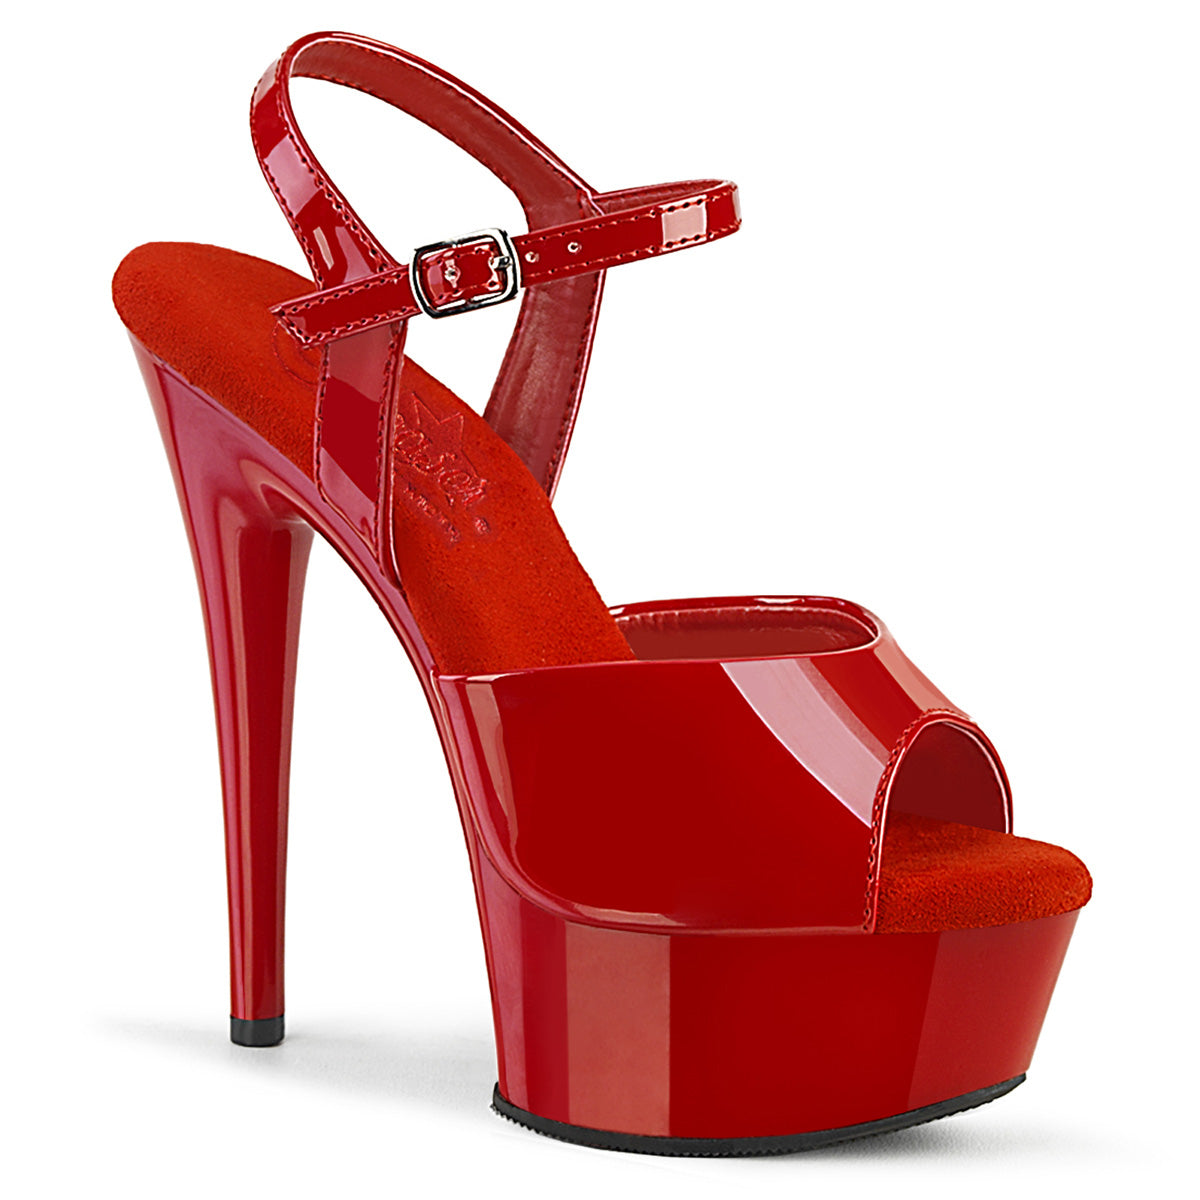 Pleaser EXCITE-609 Red Pat 6 Inch (152mm) Heel, 1 3/4 Inch (44mm) Platform Comfort Width Ankle Strap Sandal